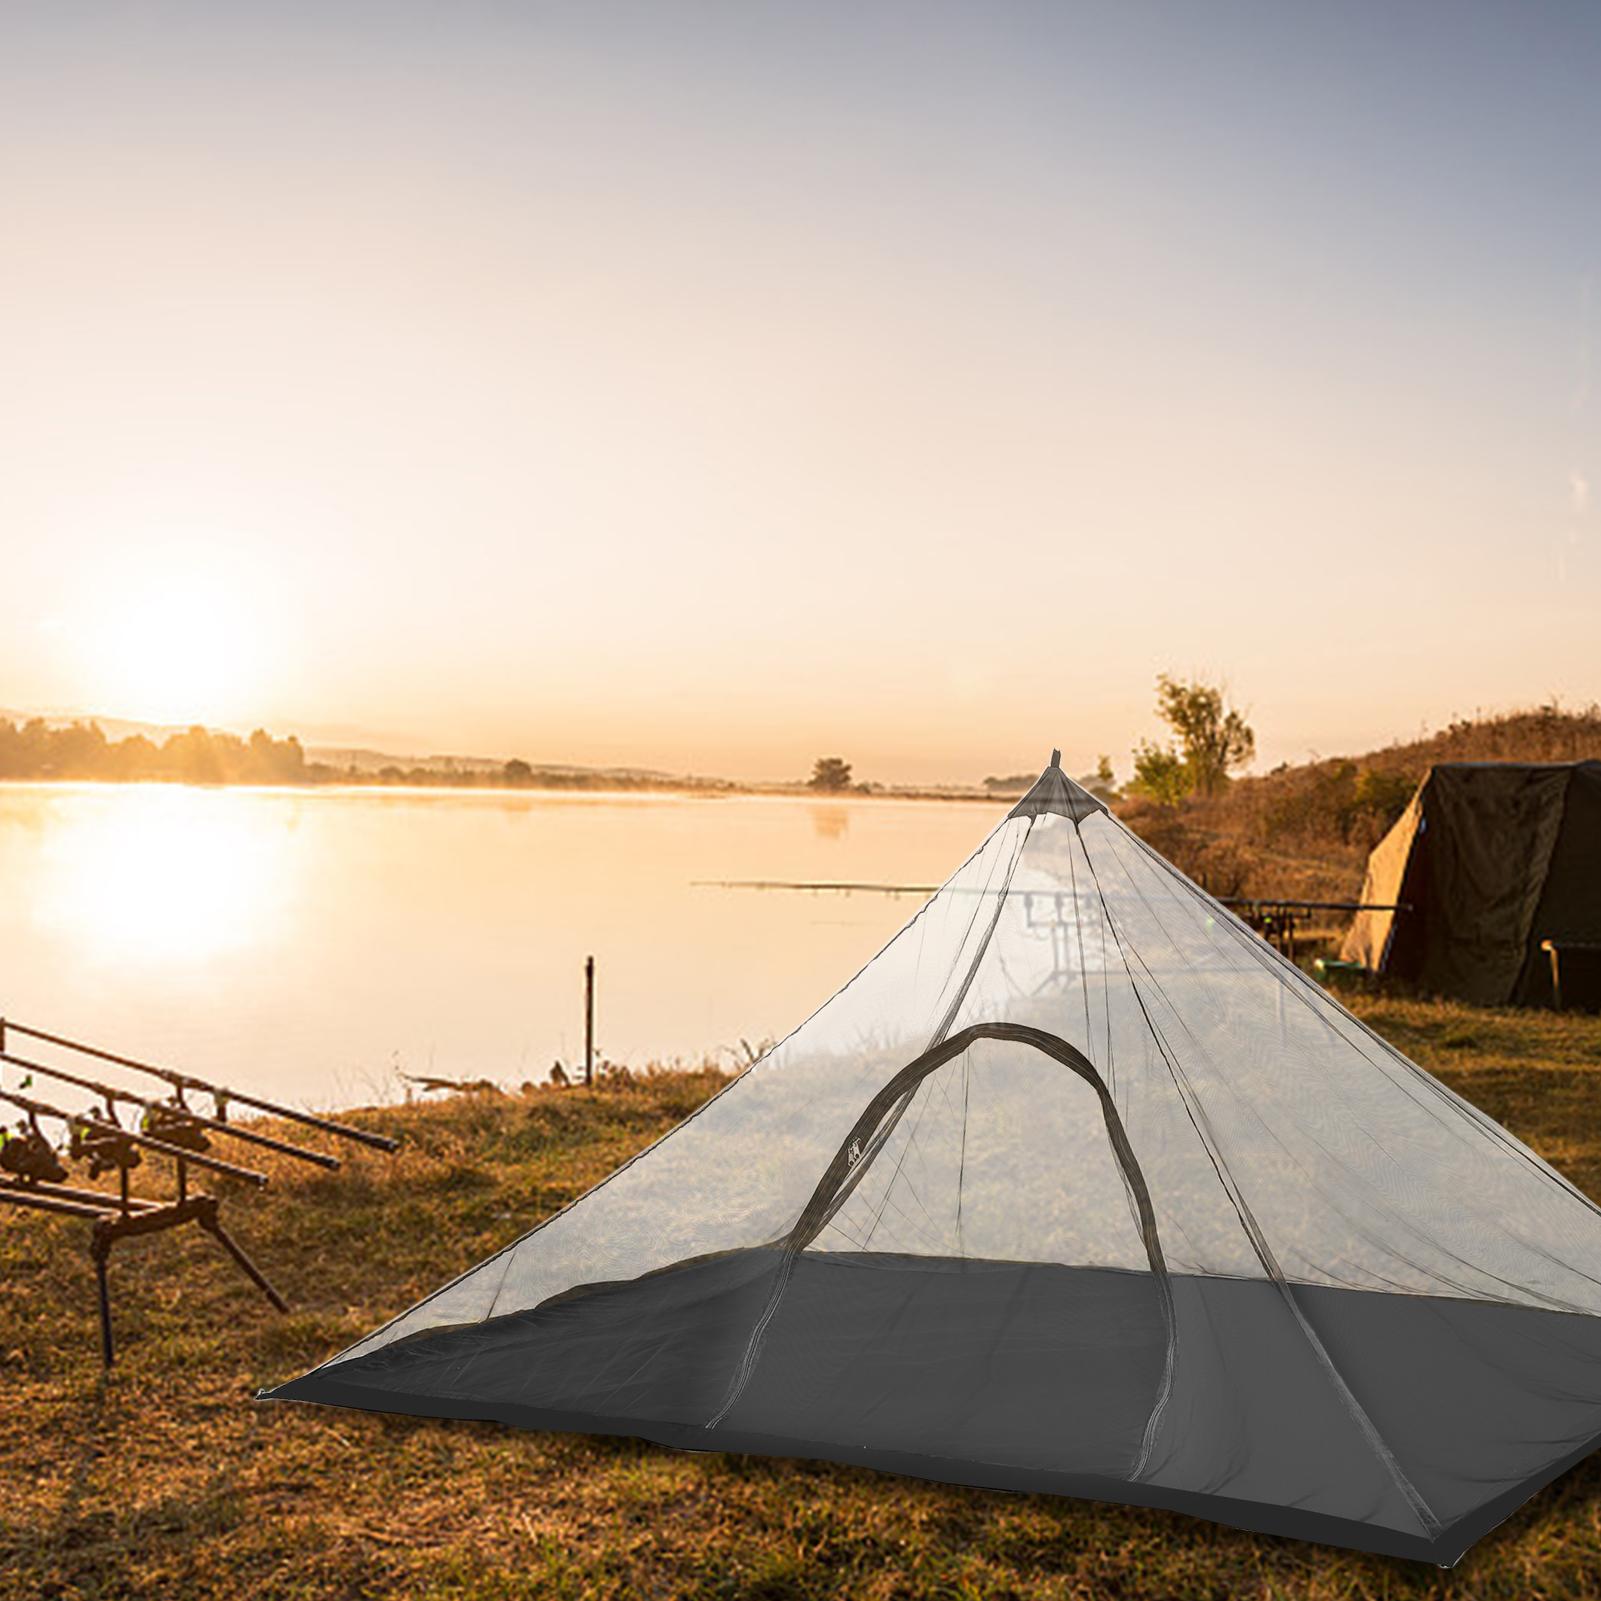 Lều cắm trại có túi đựng, chống nước, để đi dã ngoại, cắm trại, câu cá